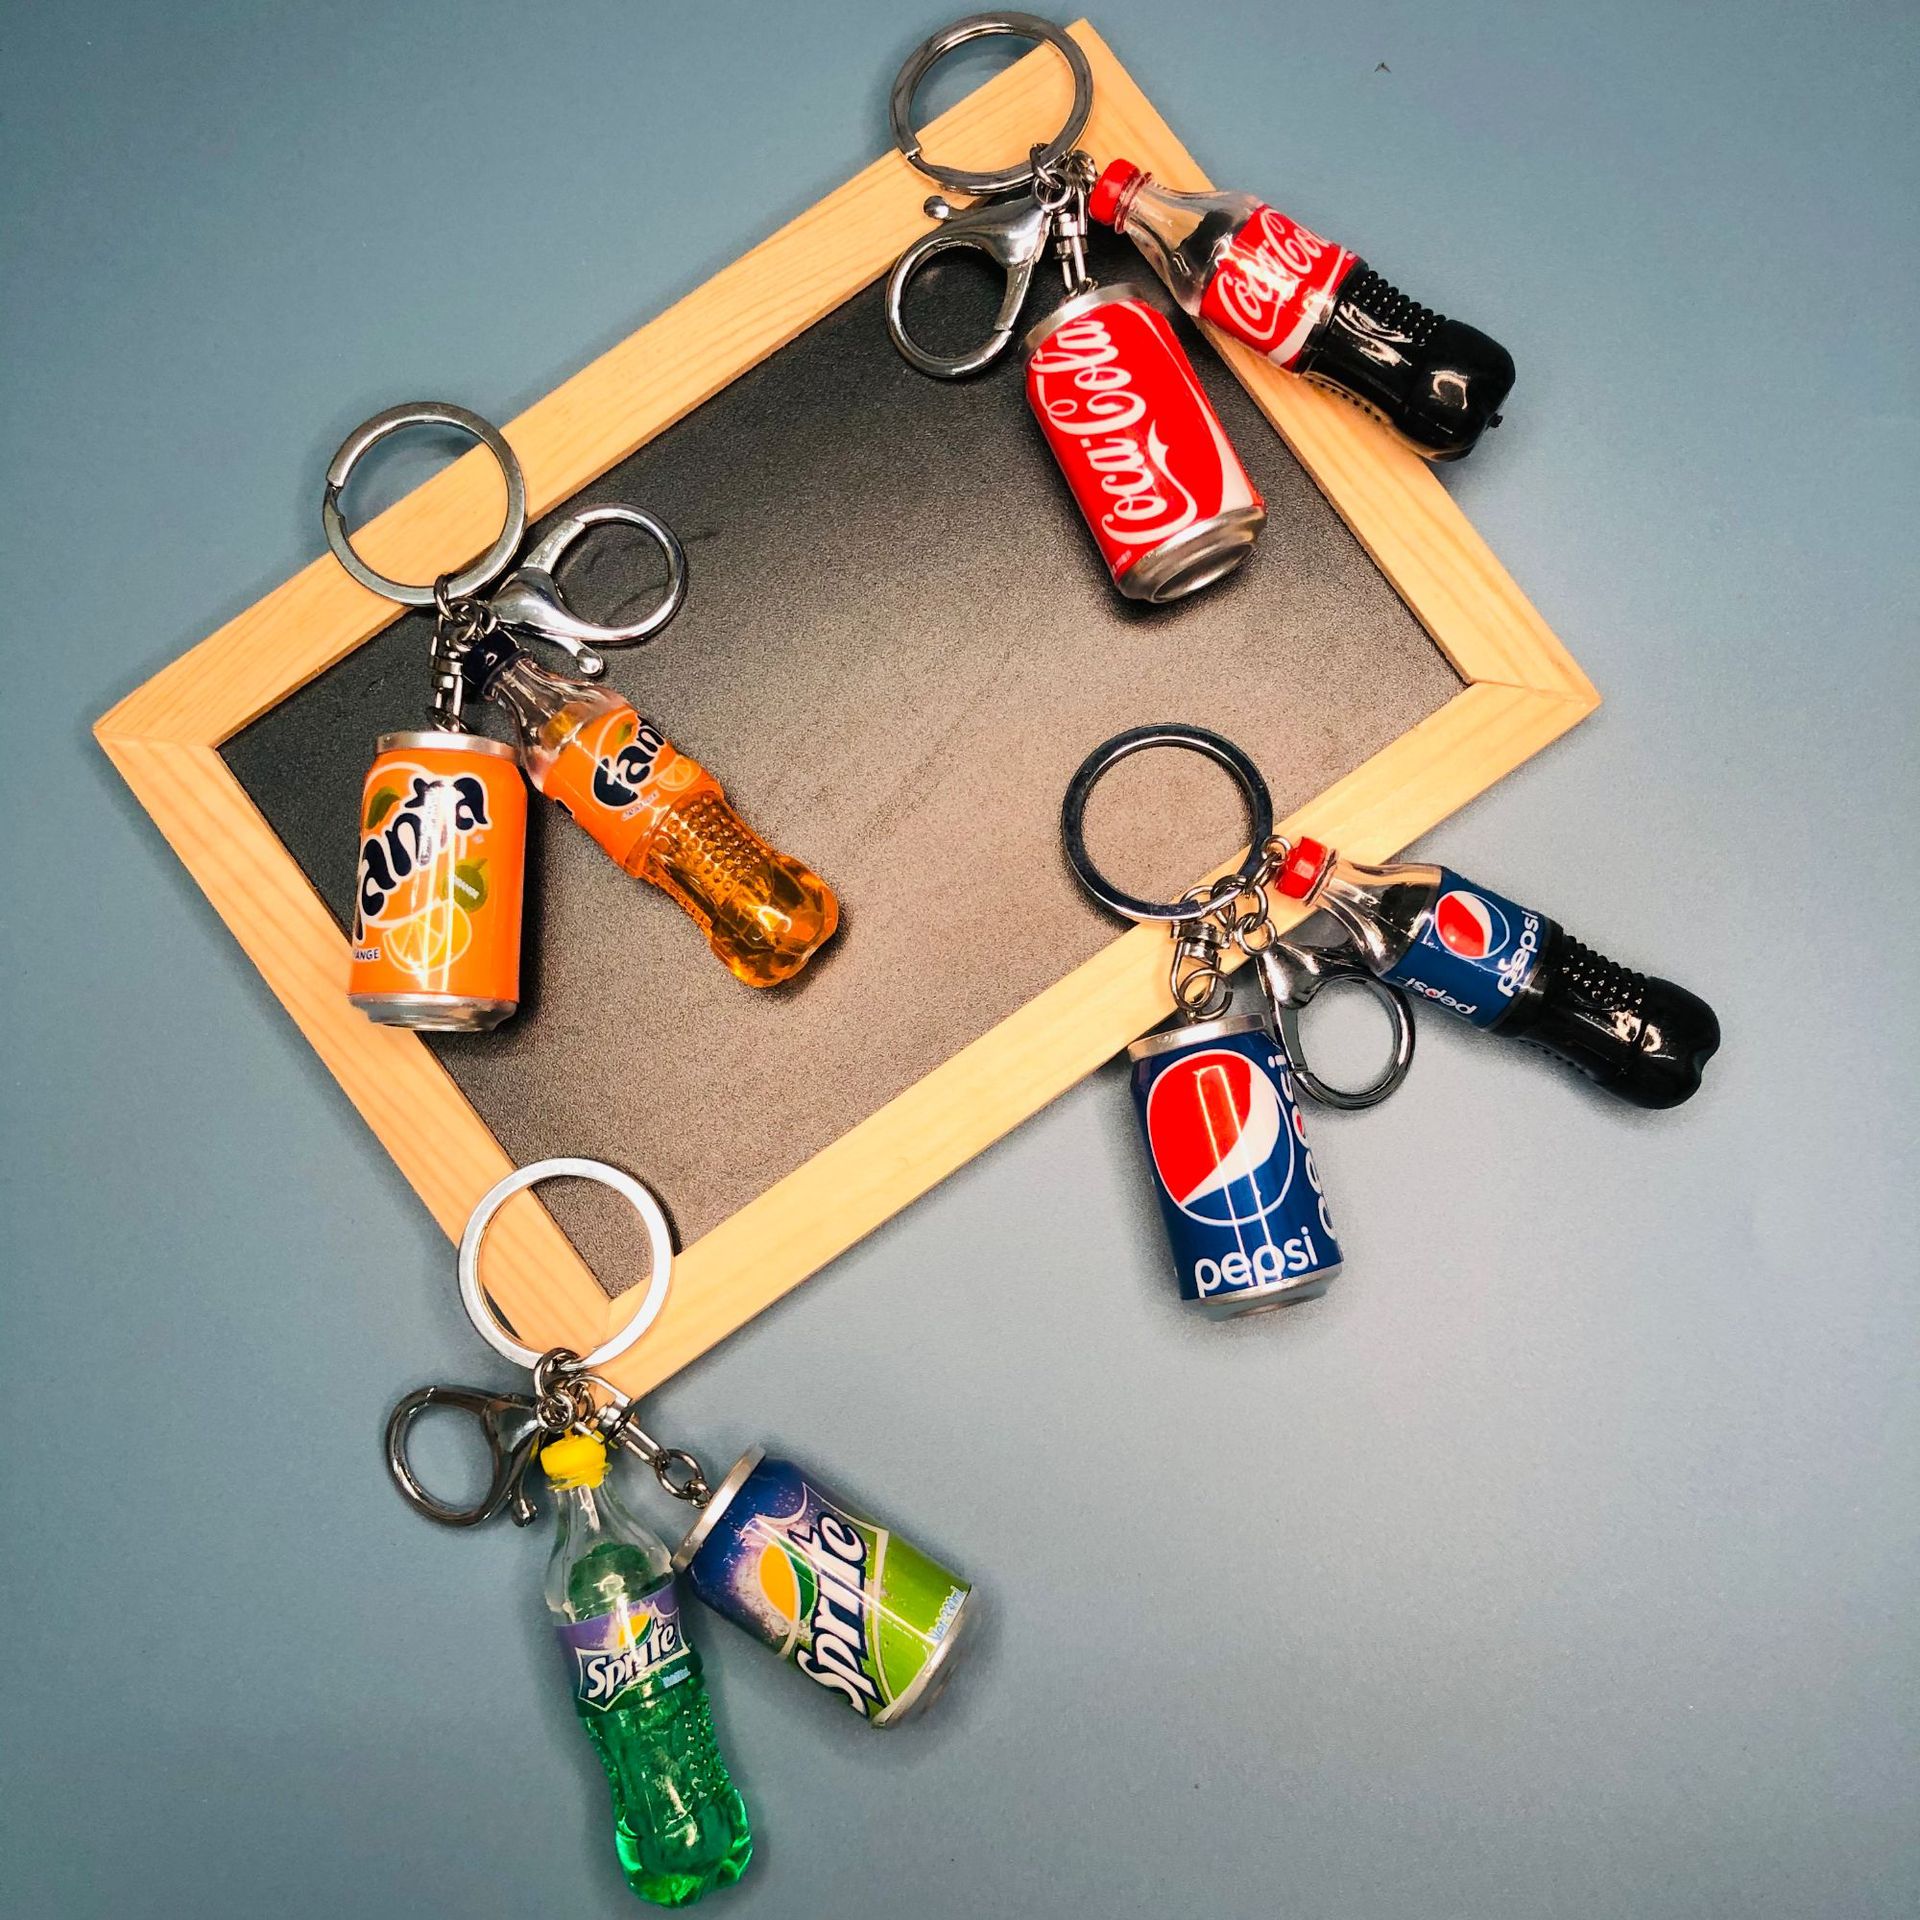 厂家创意仿真食物模型可乐雪碧芬达卡通钥匙扣挂件 小礼品配件ins